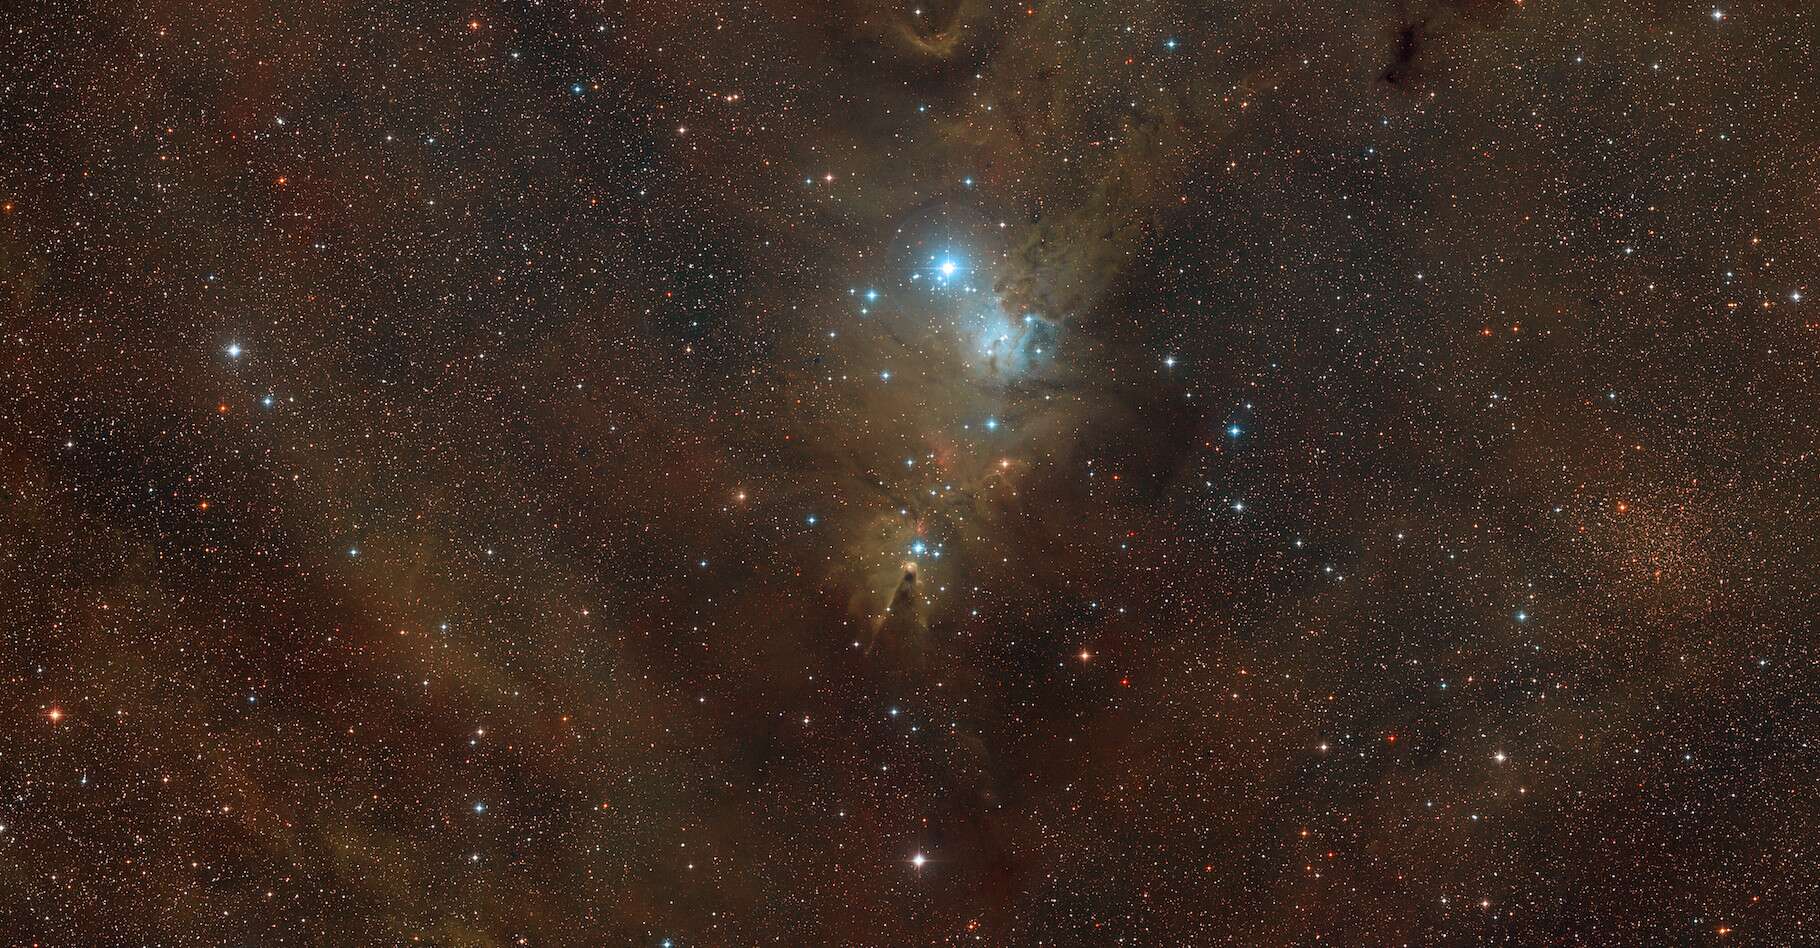 L’ESO svela l’iconica immagine della nebulosa conica e del “pilastro della creazione” nel suo 60° anniversario